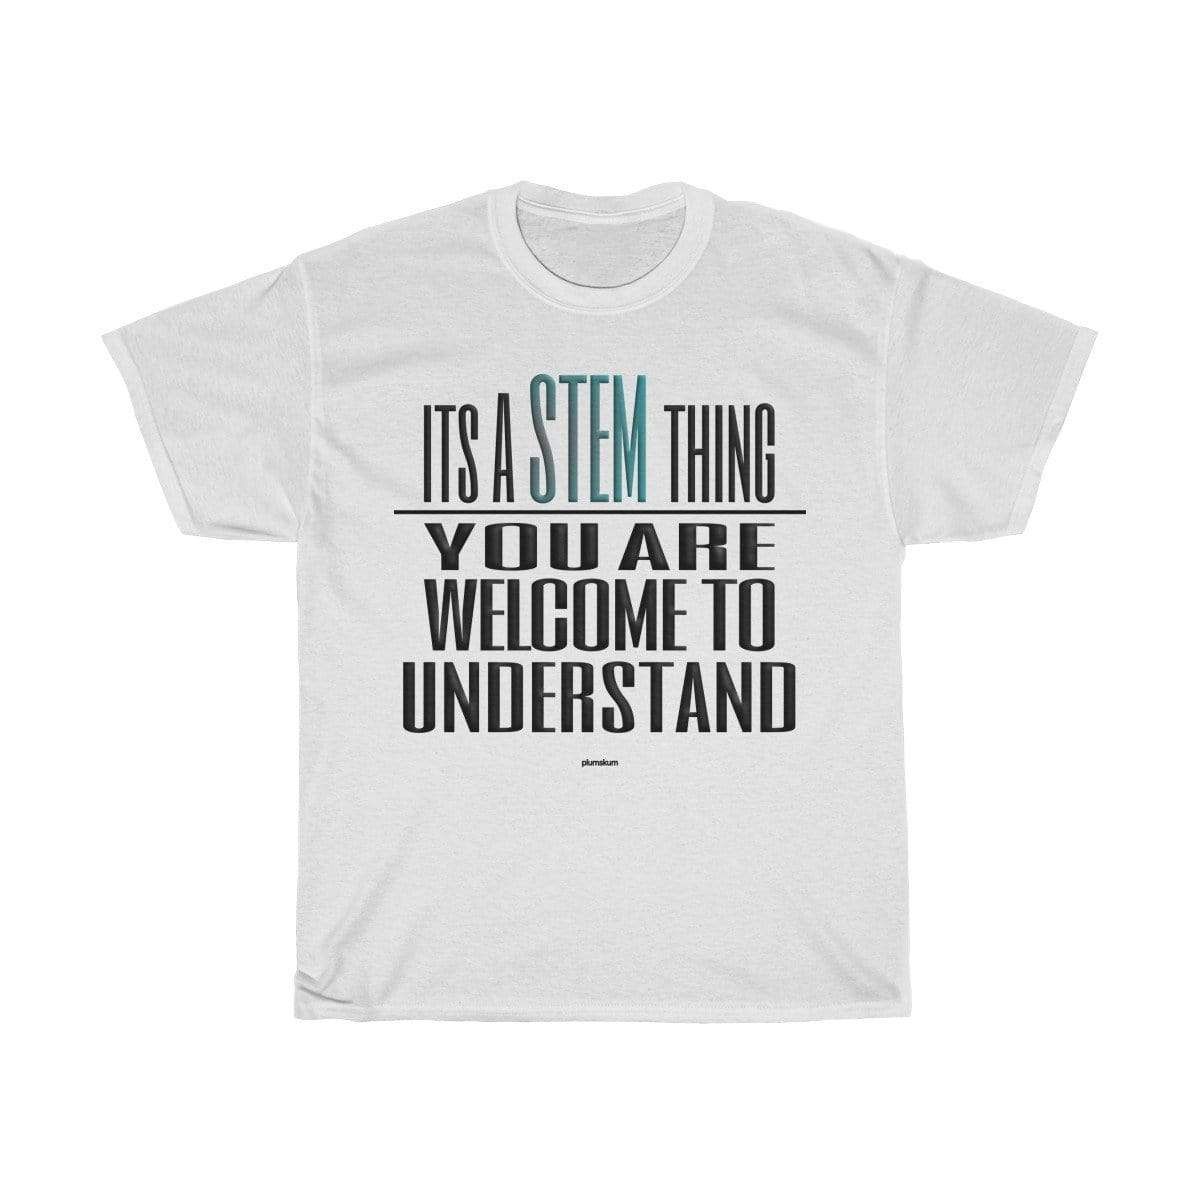 Plumskum T-Shirt White / L Understand STEM T-Shirt